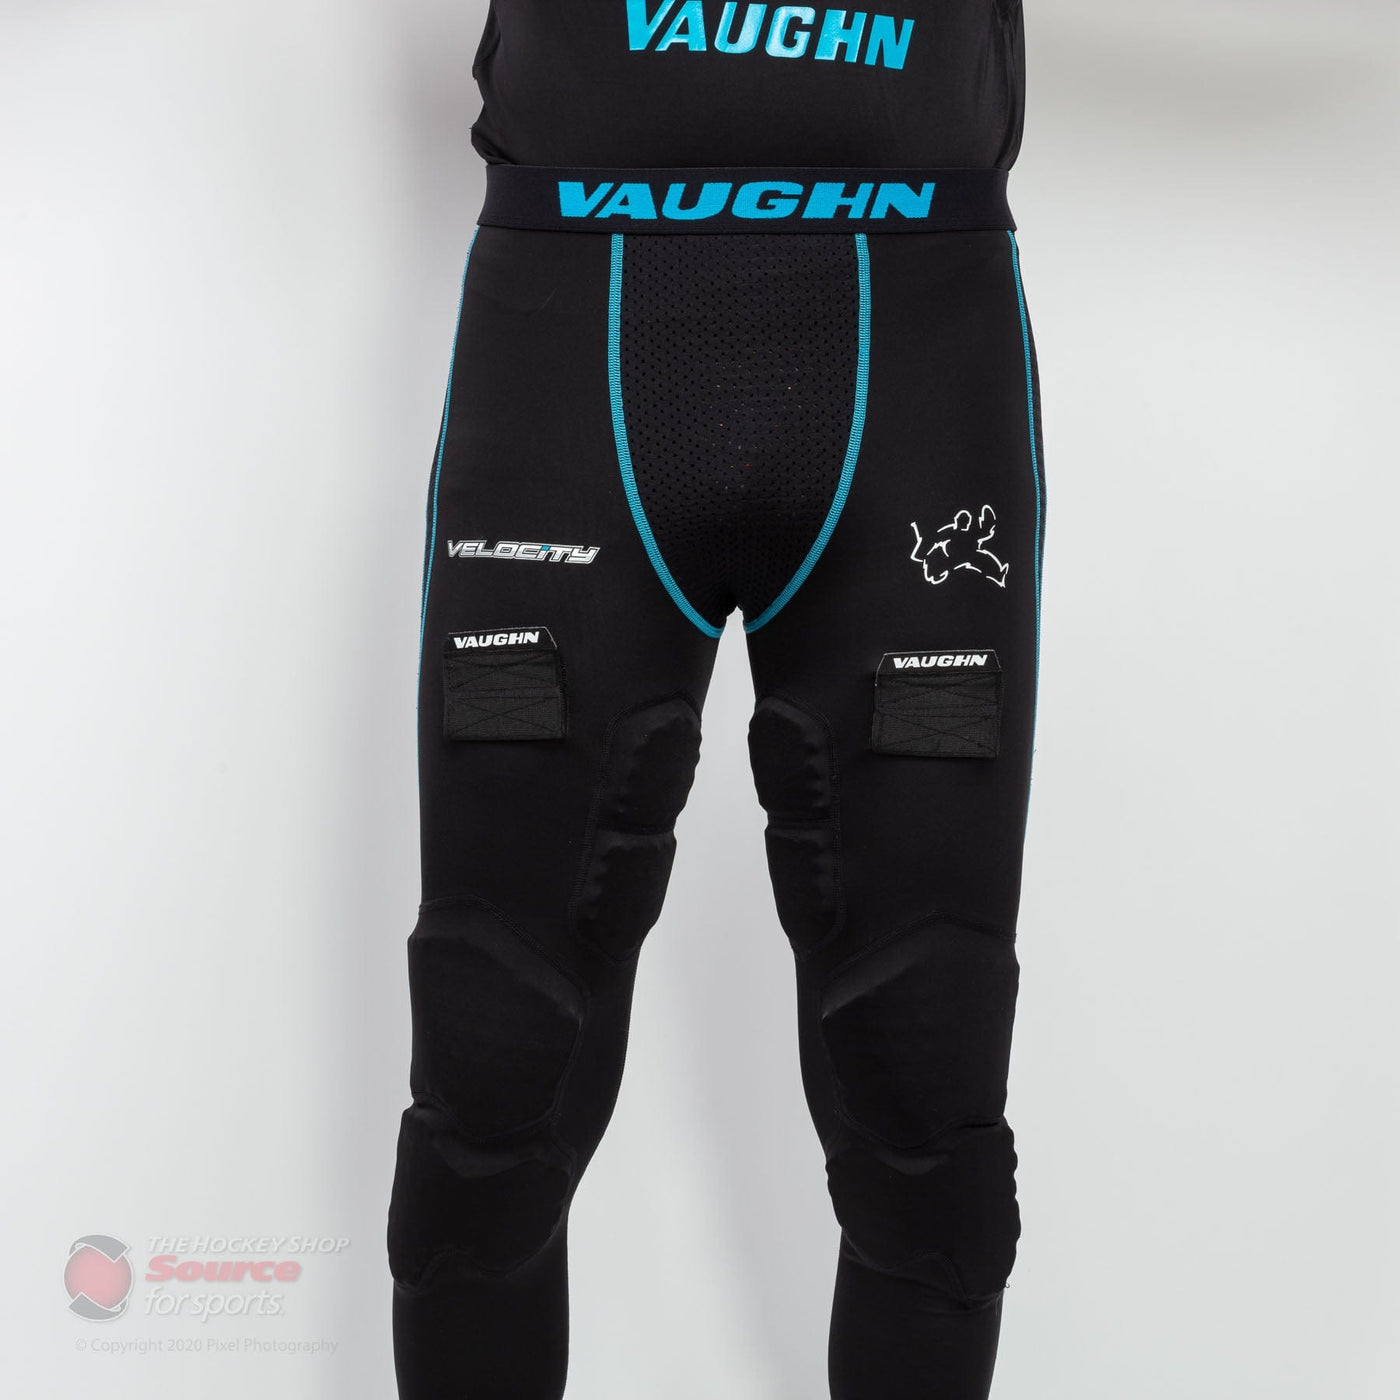 Vaughn Velocity V9 Pro Senior Goalie Baselayer Padded Pants